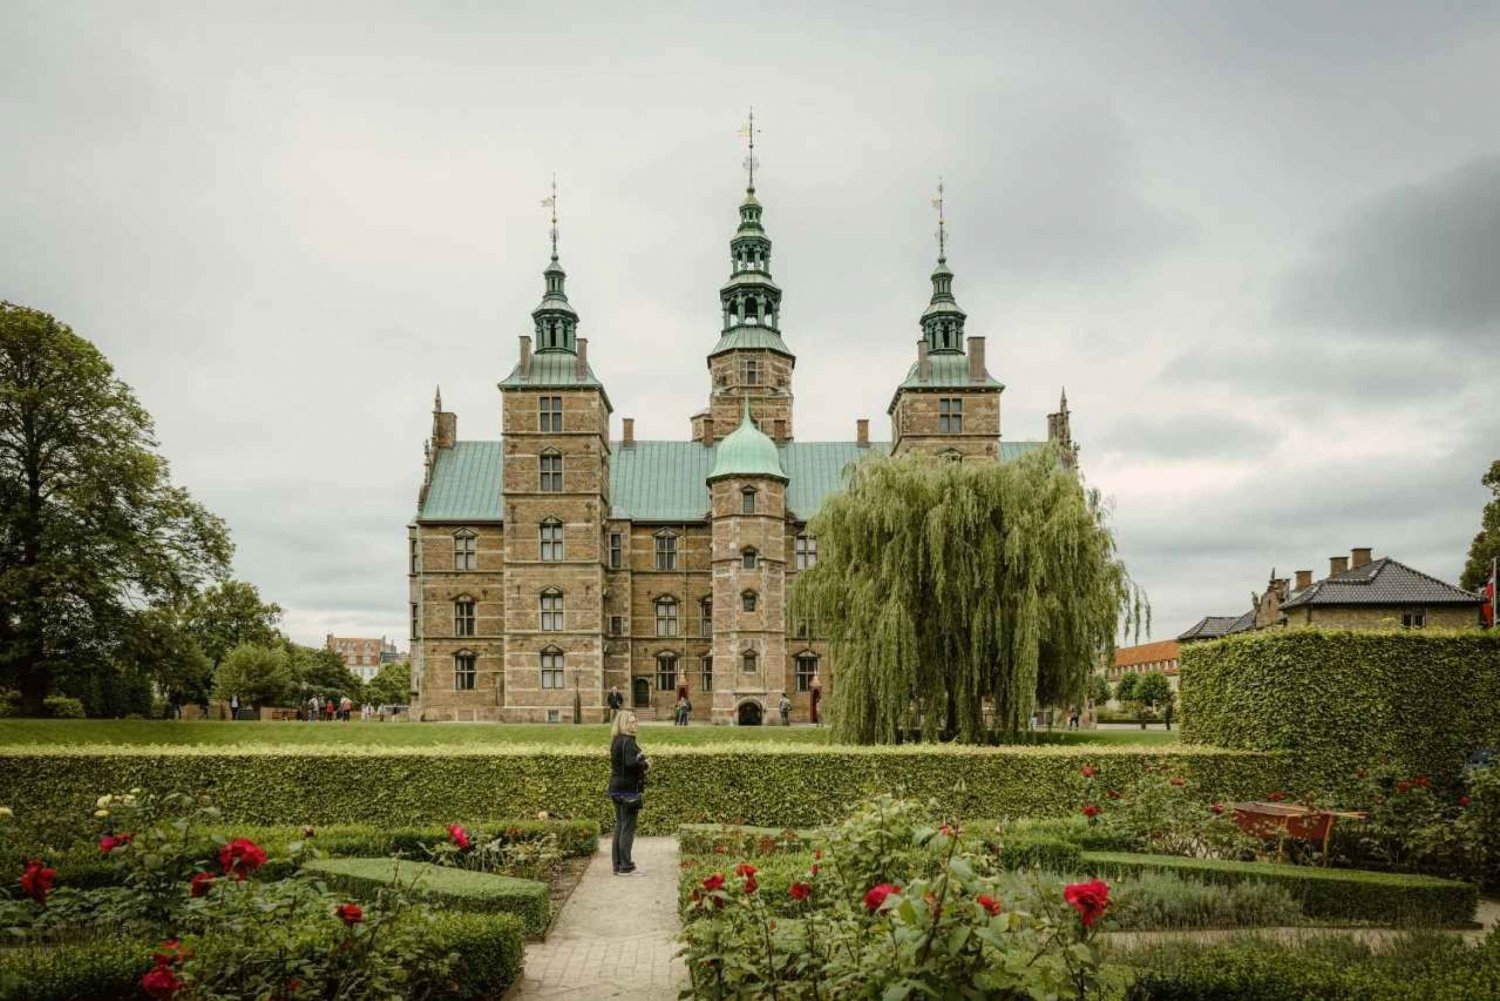 Copenhagen: inner city and Rosenborg tour